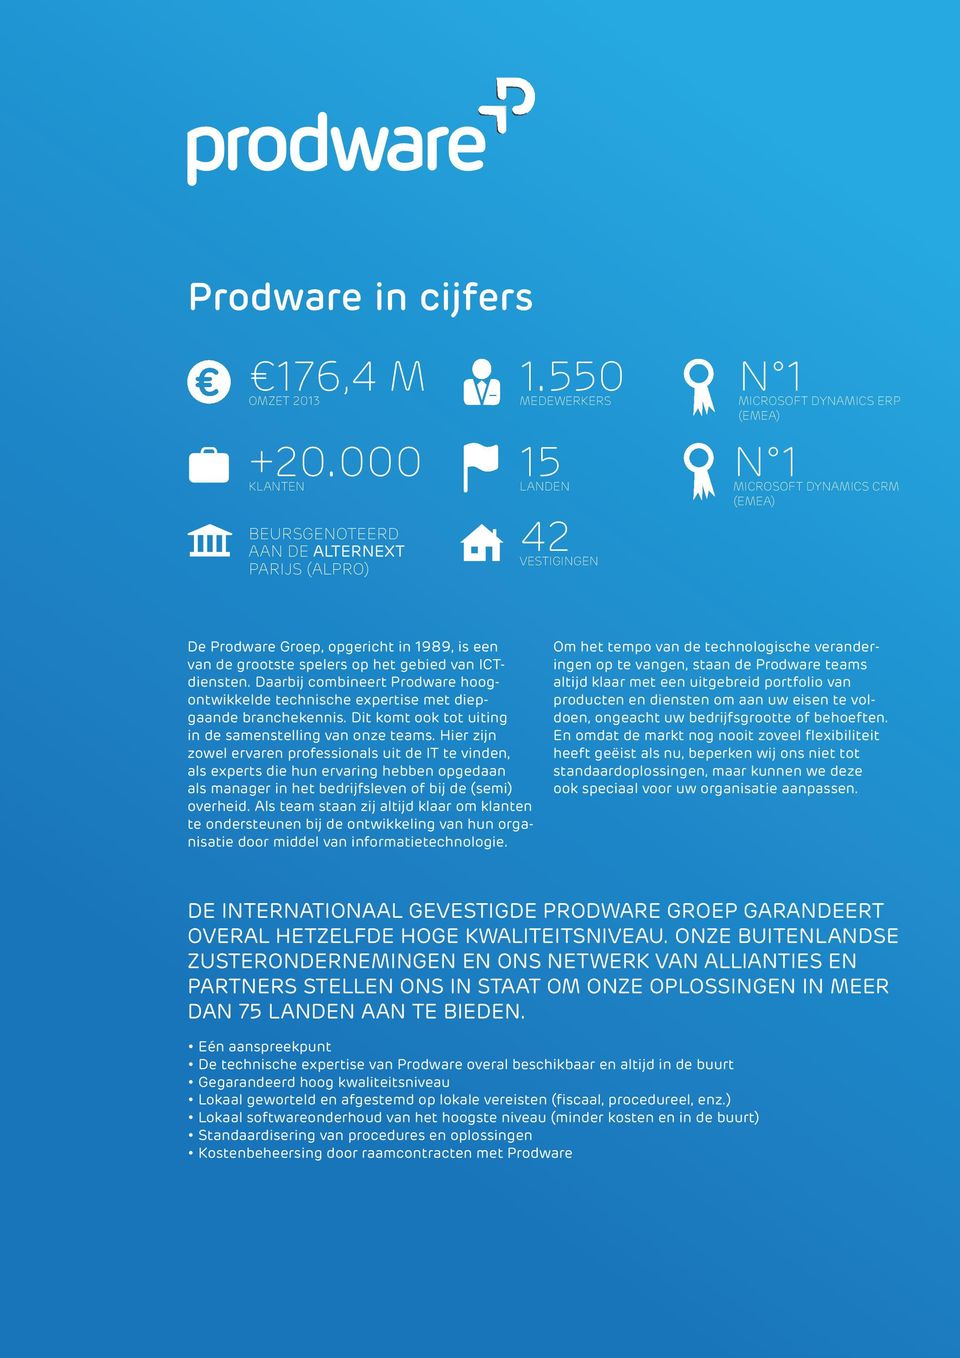 van de grootste spelers op het gebied van ICTdiensten. Daarbij combineert Prodware hoogontwikkelde technische expertise met diepgaande branchekennis.